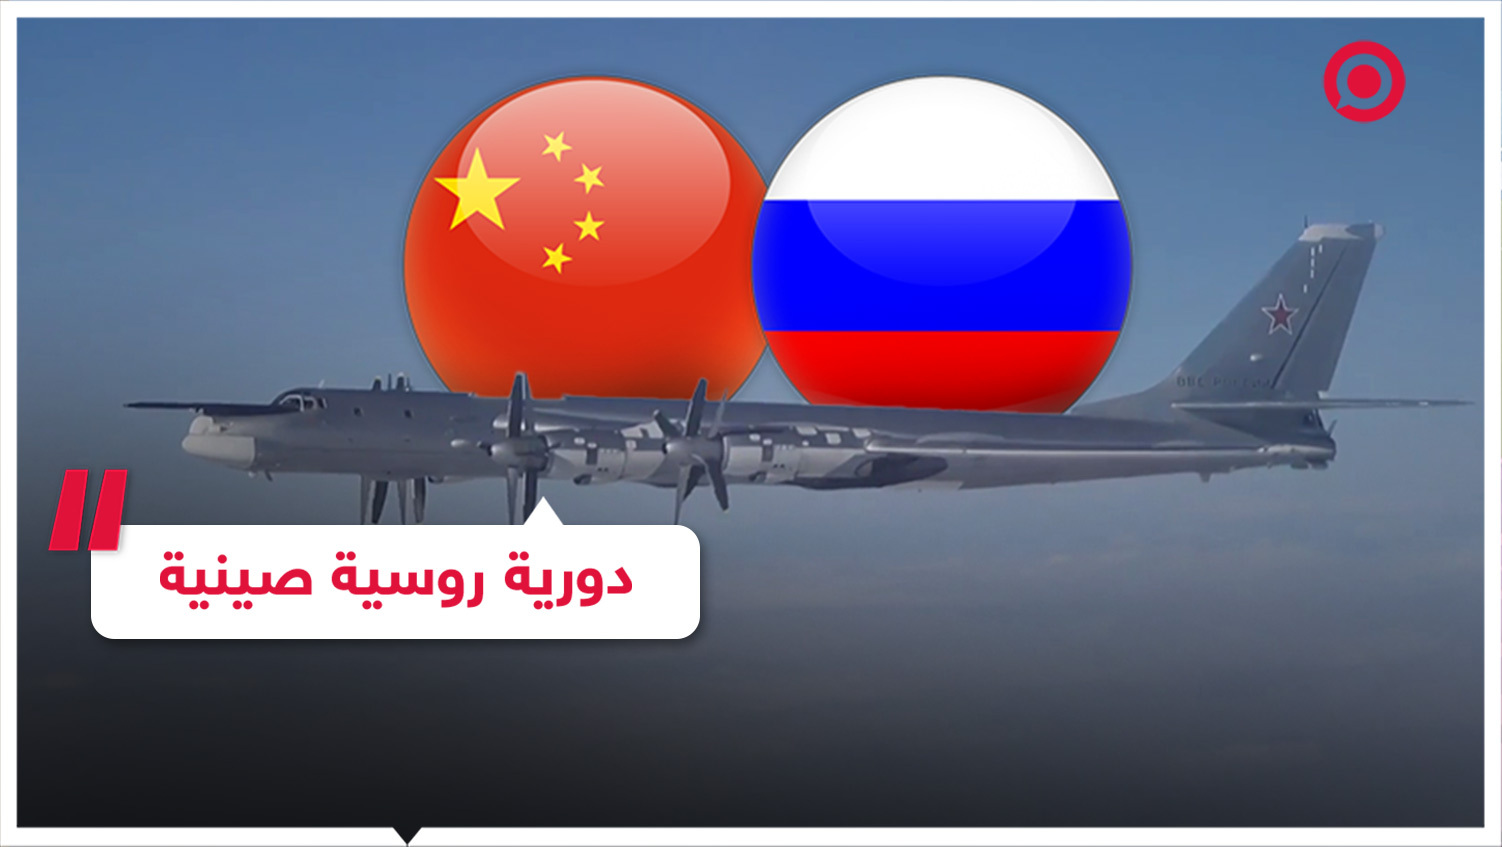 لقطات لدورية روسية صينية مشتركة